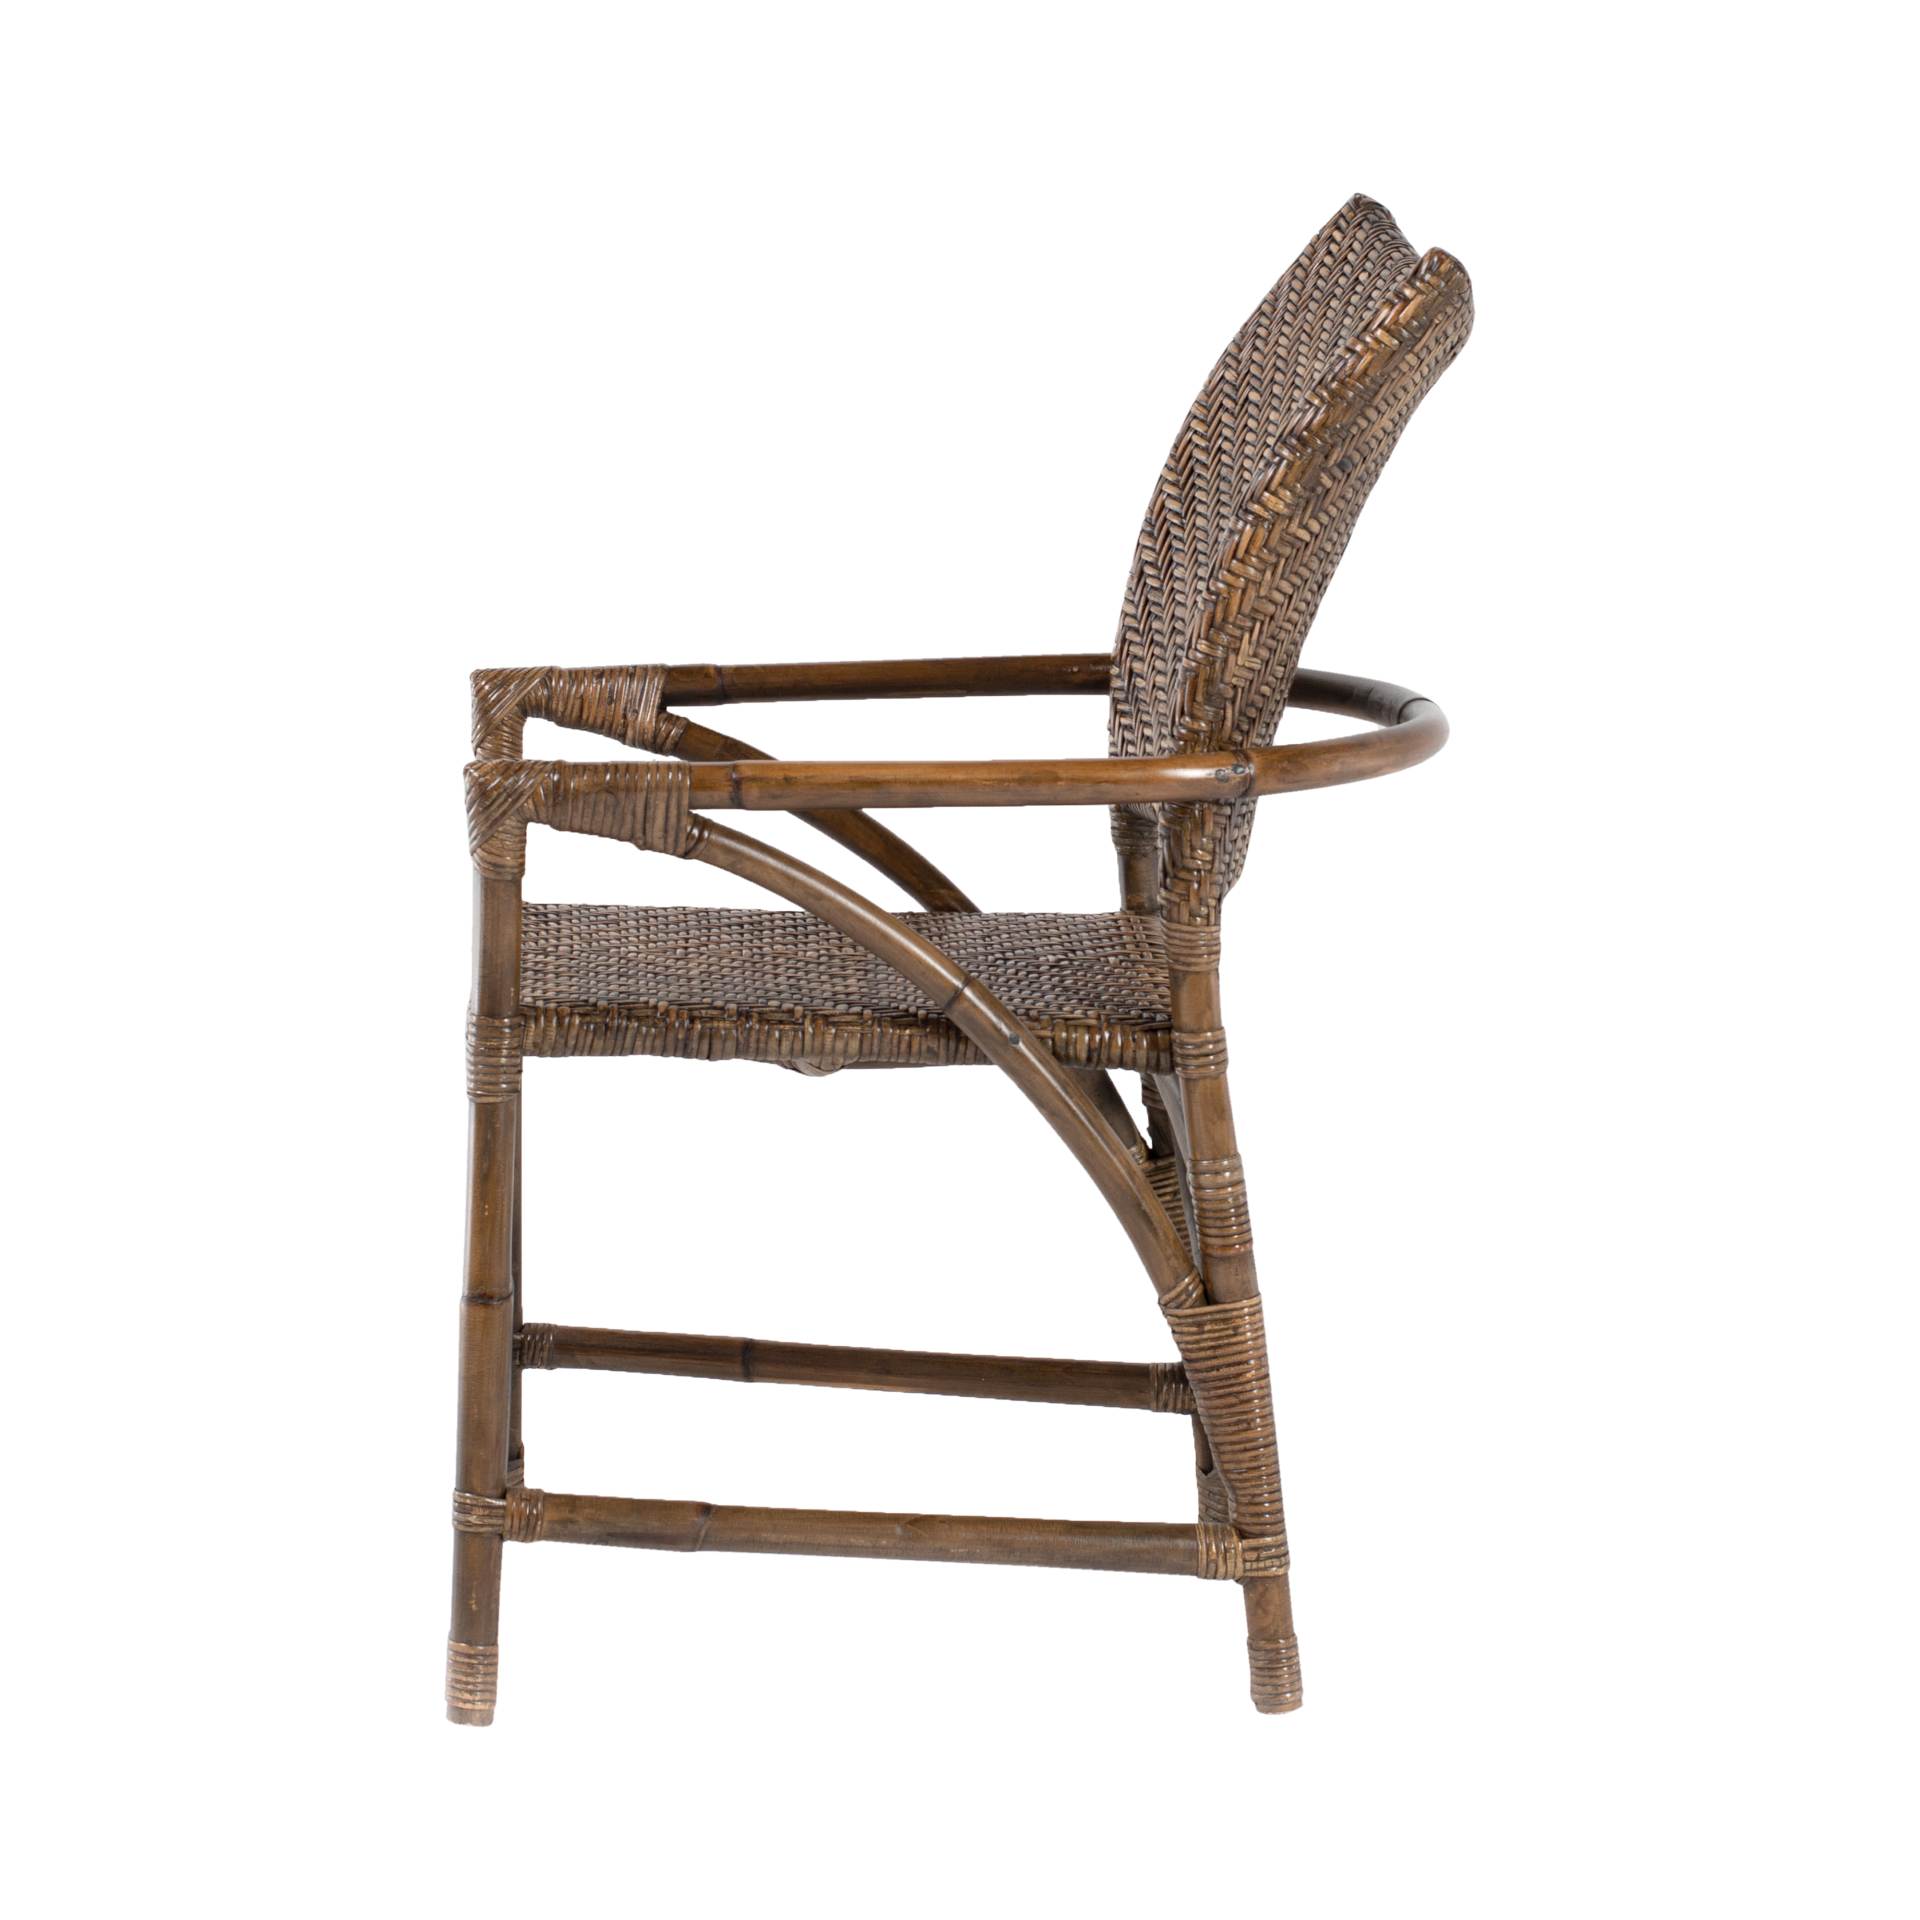 Der Armlehnstuhl Countess überzeugt mit seinem Landhaus Stil. Gefertigt wurde er aus Rattan, welches einen braunen Farbton besitzt. Der Stuhl verfügt über eine Armlehne und ist im 2er-Set erhältlich. Die Sitzhöhe beträgt beträgt 43 cm.